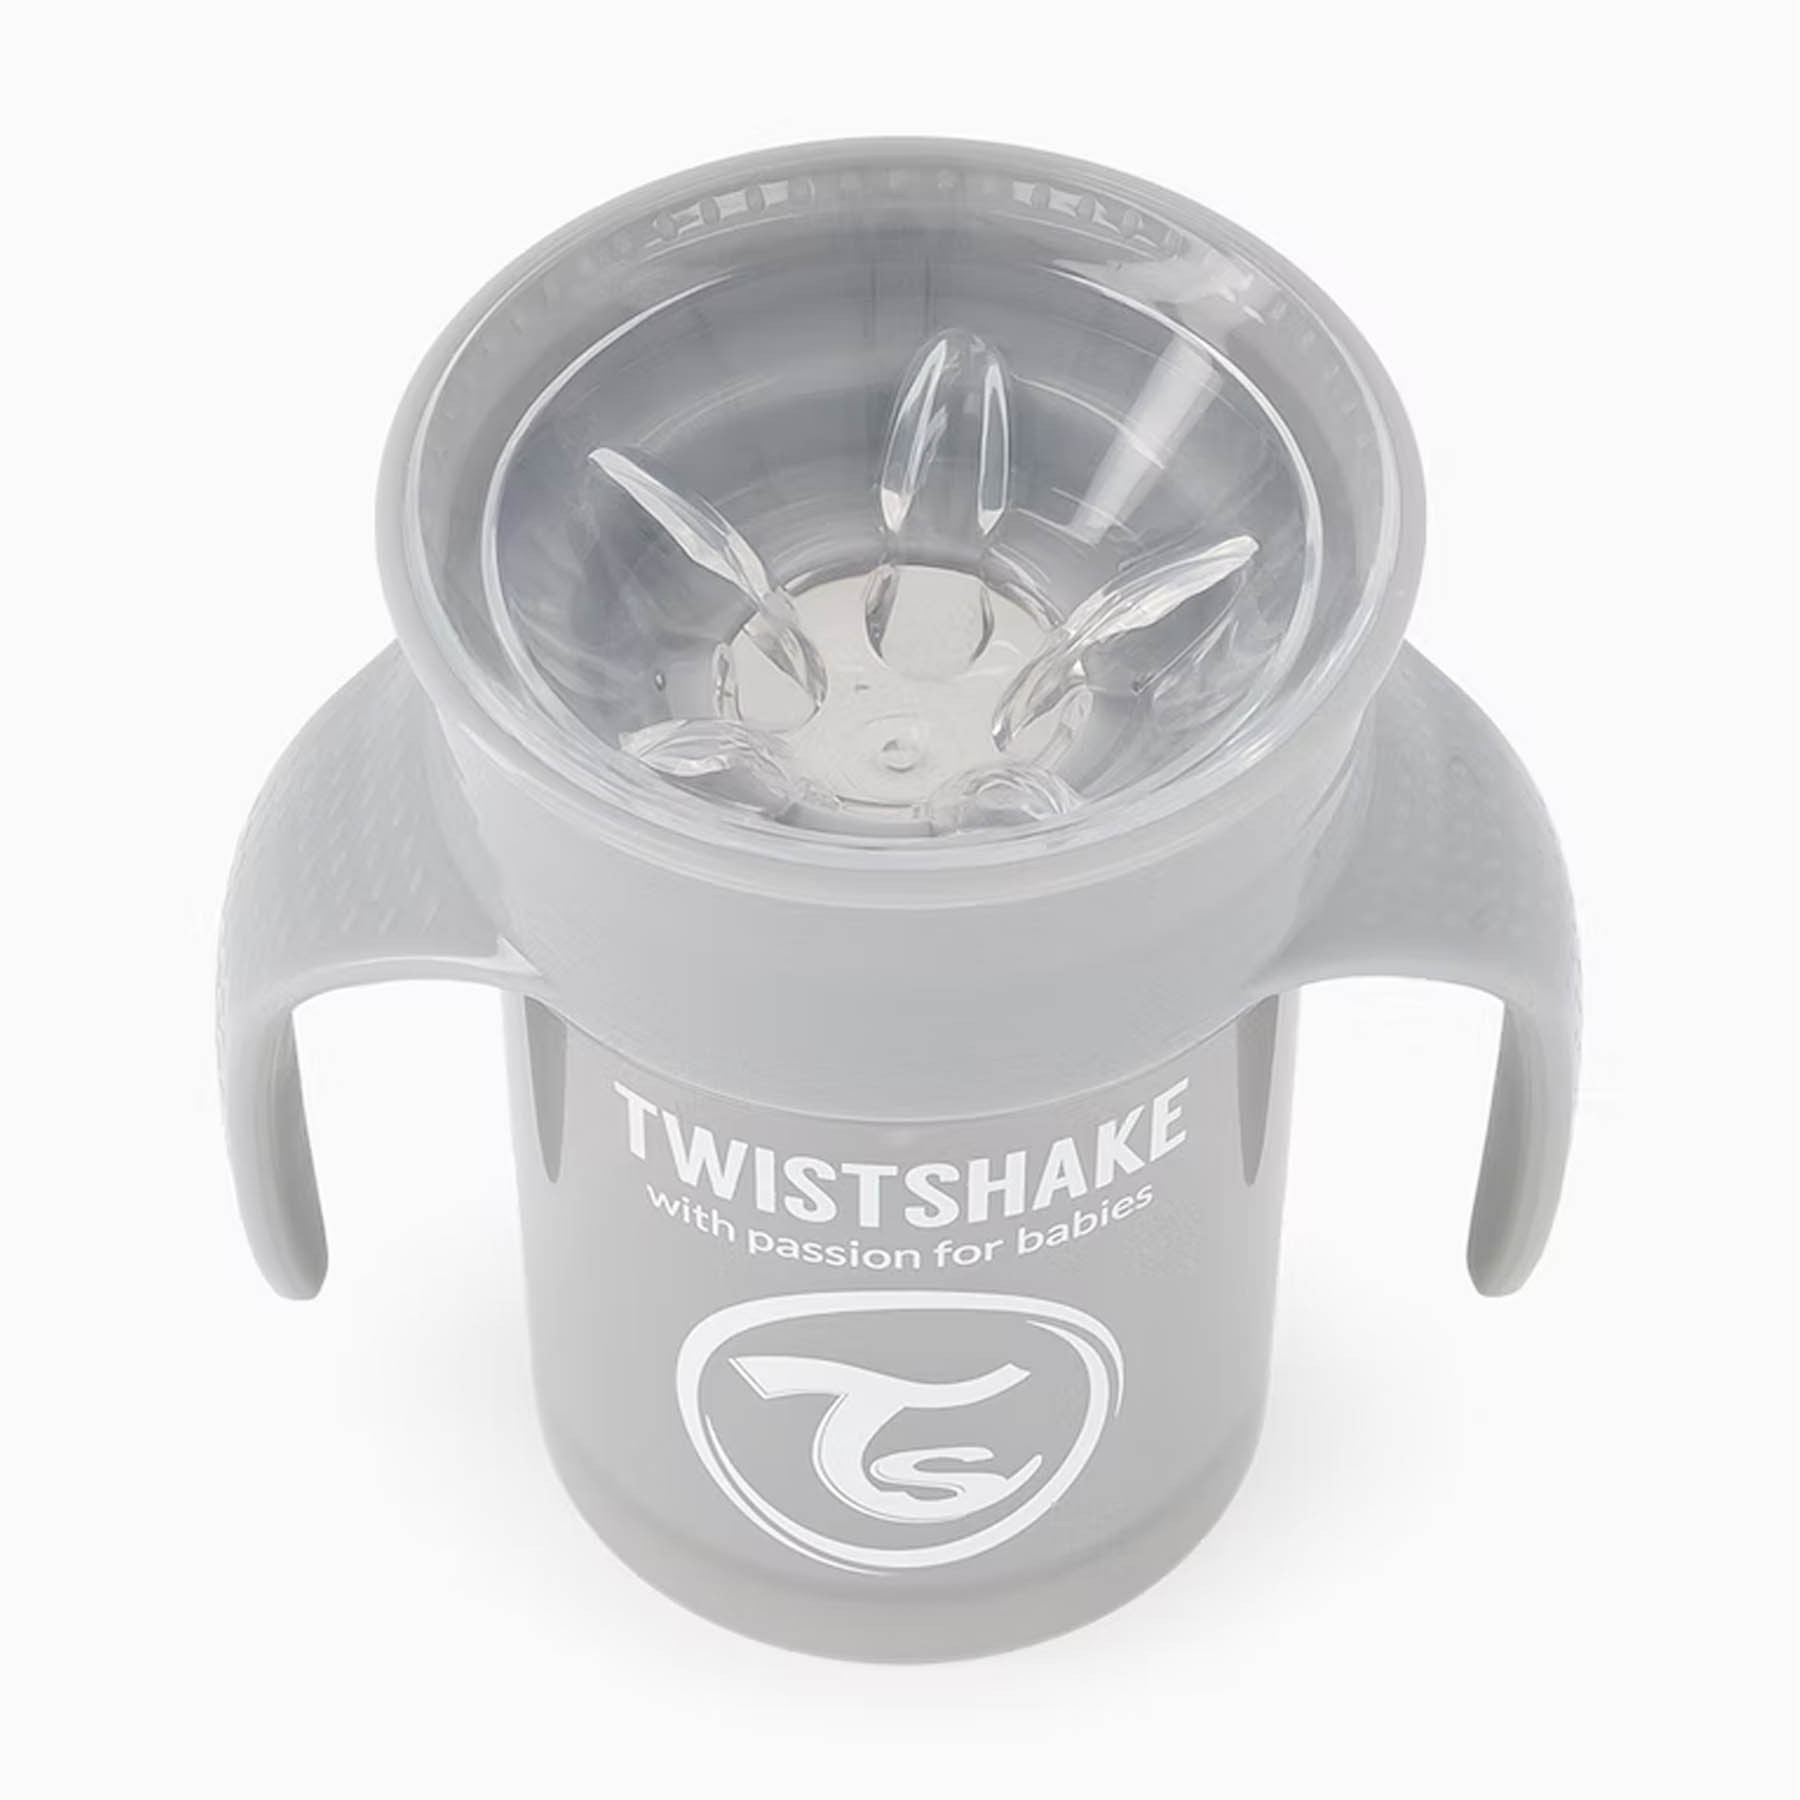 Vaso con pajita 360 ml  Antiderrames - Twistshake